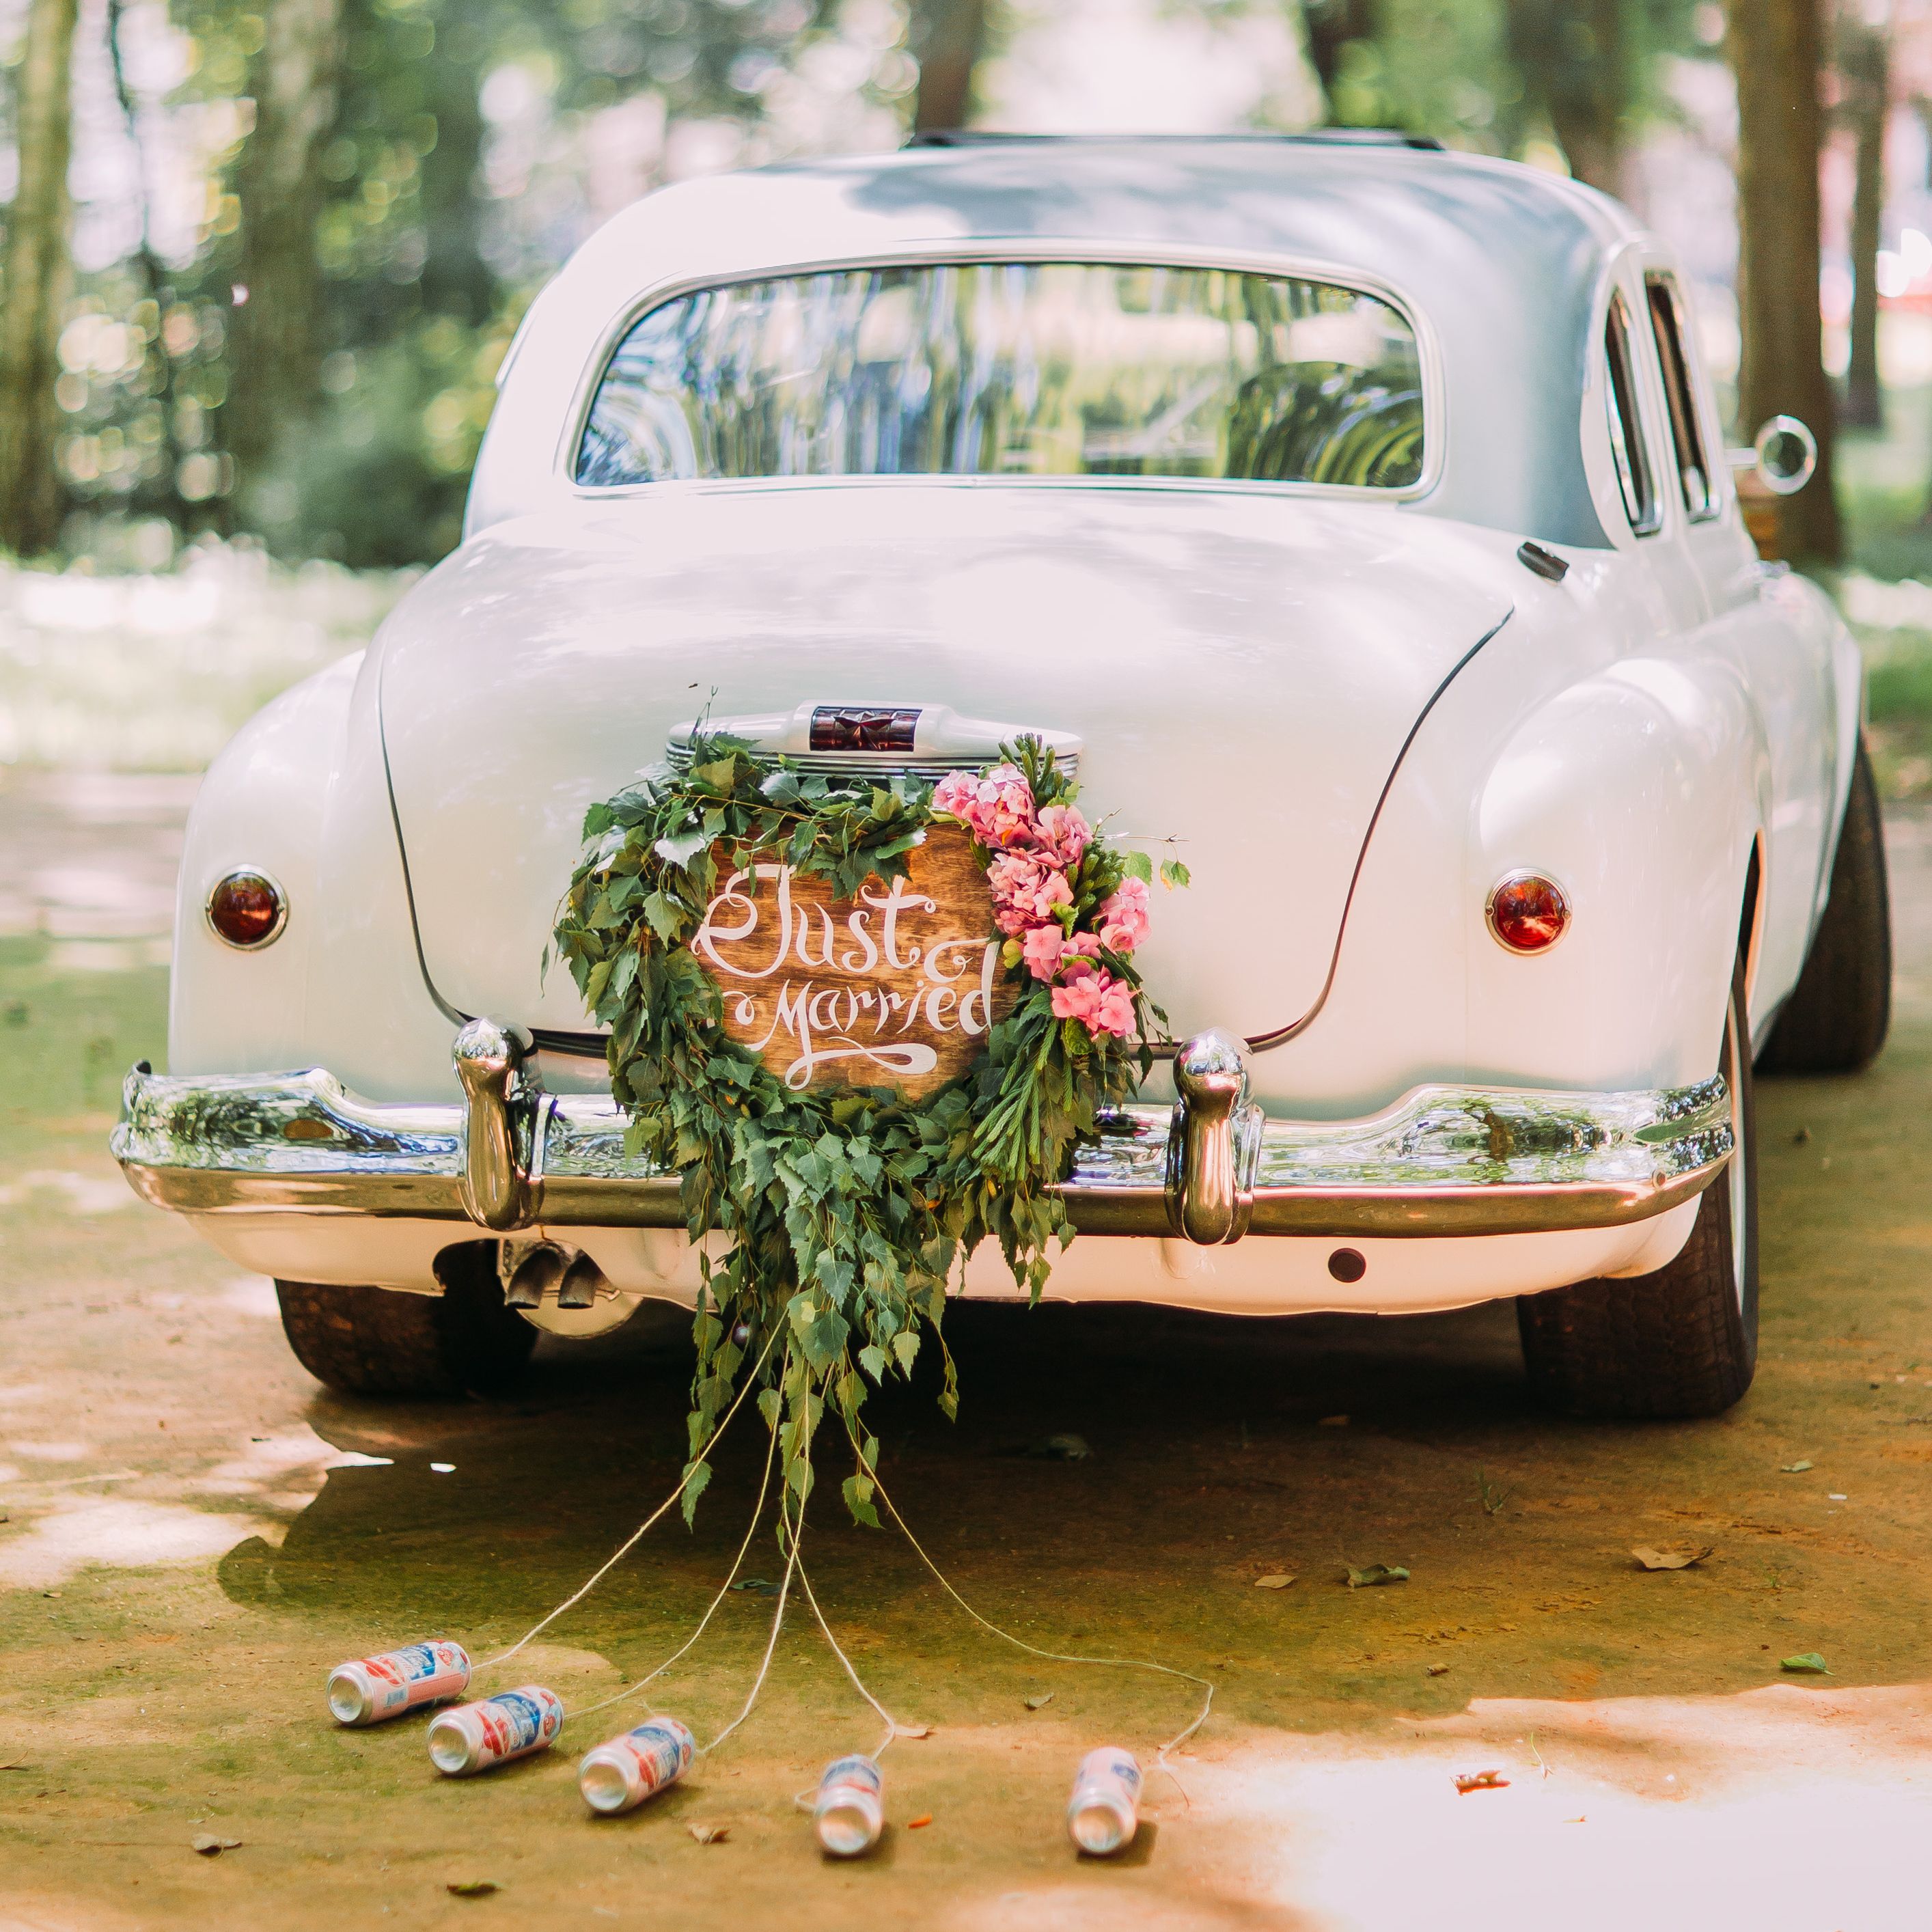 Comment faire un nœud pour sa voiture de mariage ?